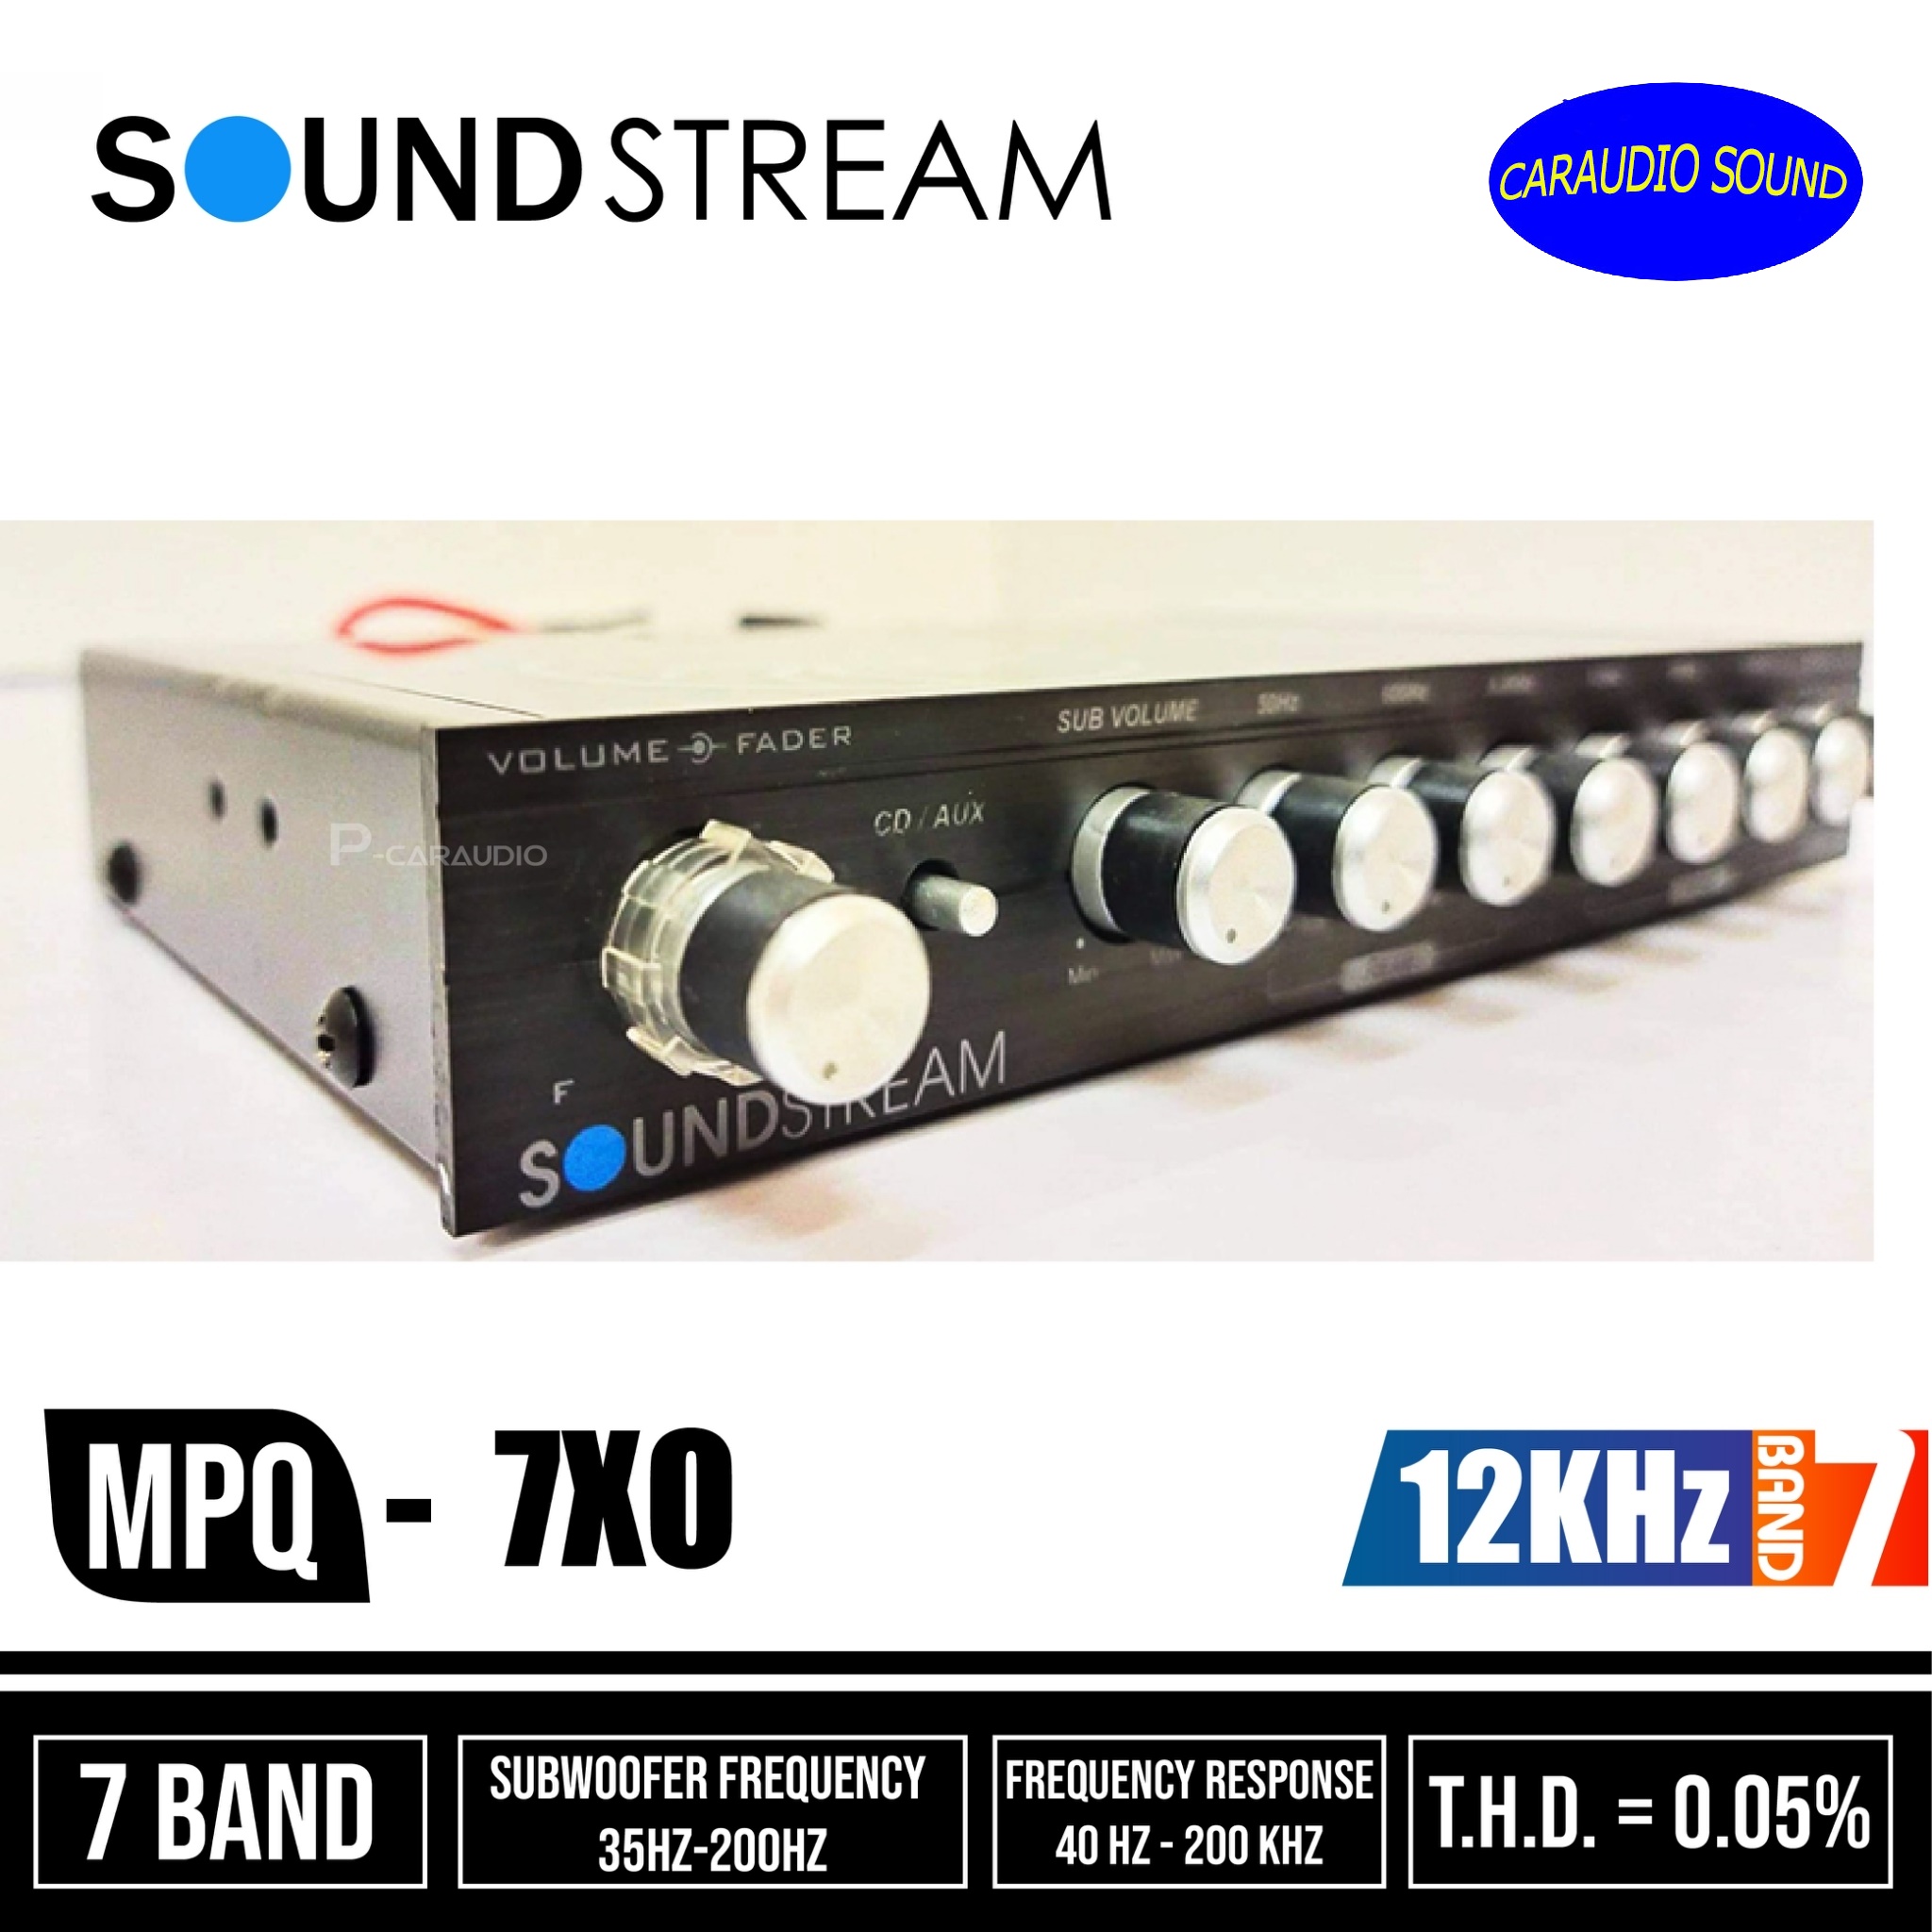 ปรีรถยนต์ 7แบนด์ Soundstream MPQ-7XO  ราคา2200 บาท 7 Band Parametric Equalizer/EQ ปรีแอมป์ 7 Band เสียงดี รับประกันคุณภาพ